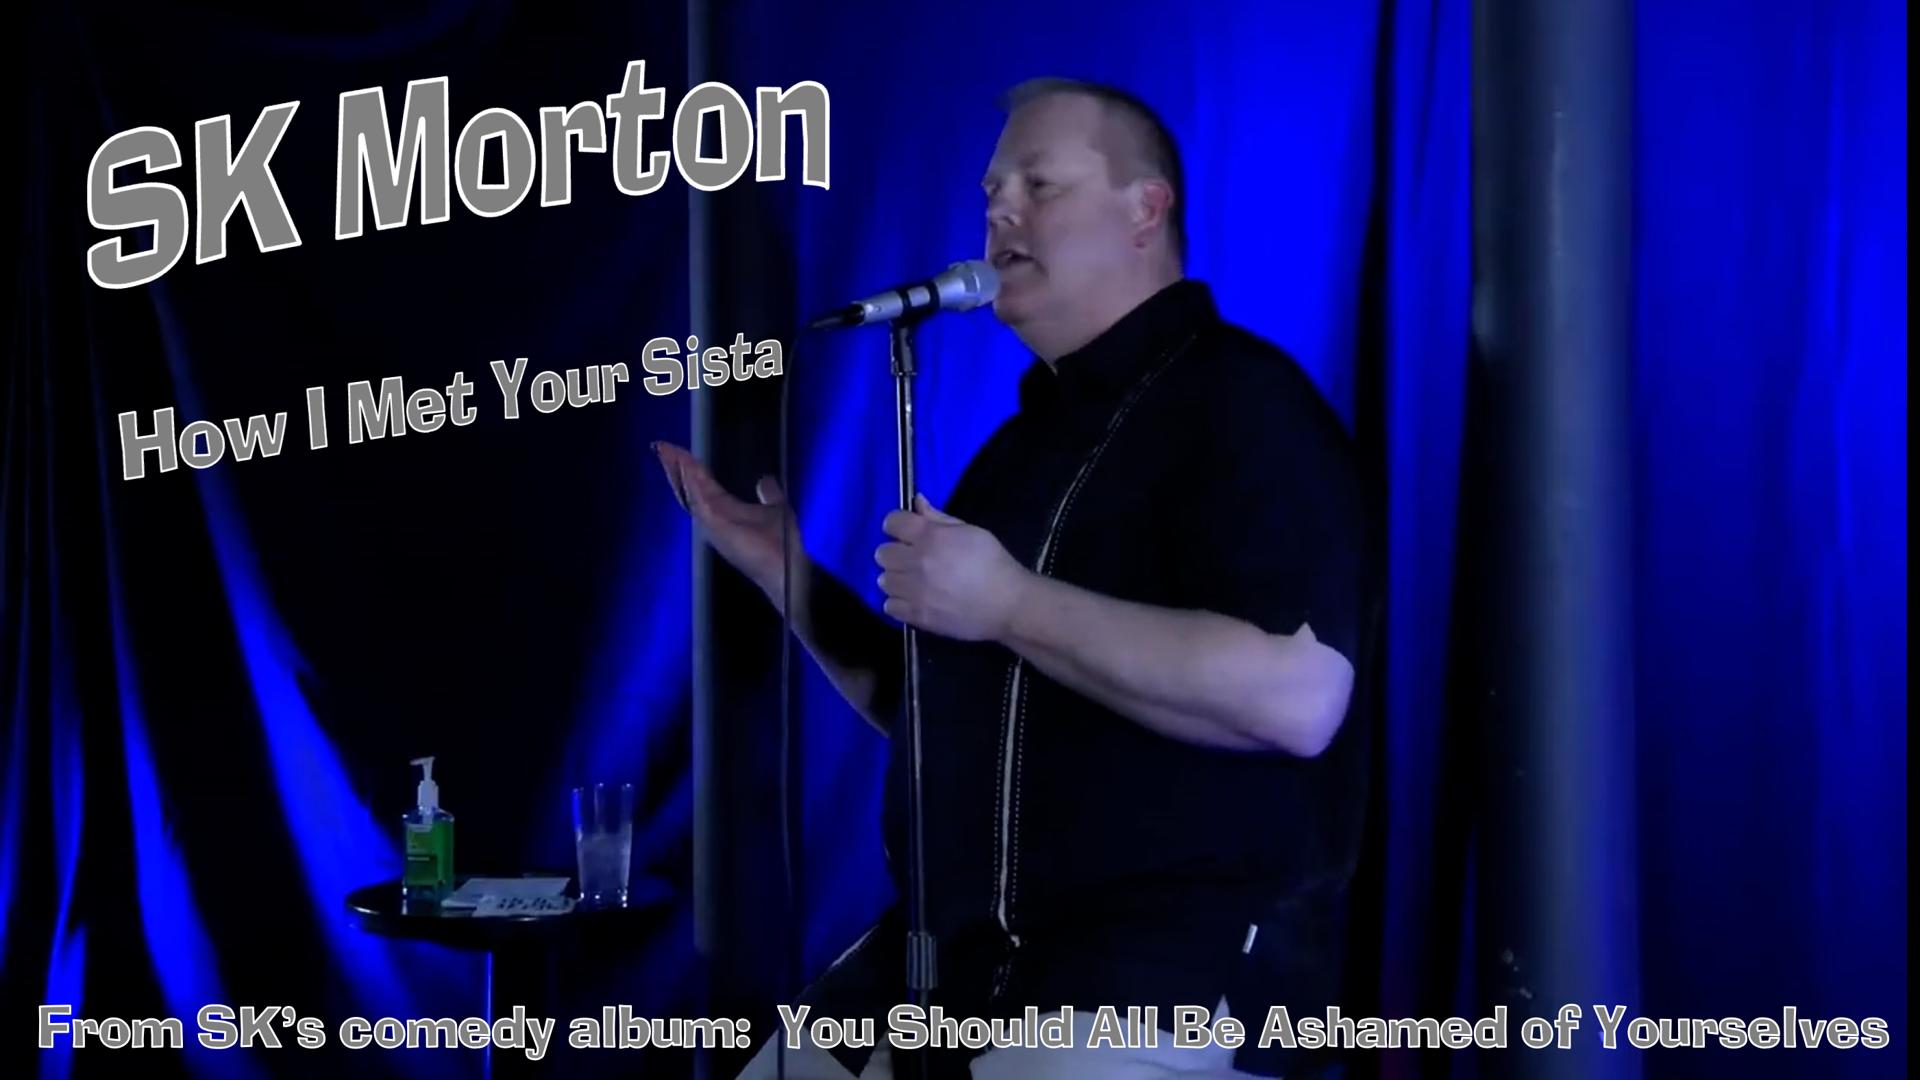 SK Morton - How I Met Your Sista